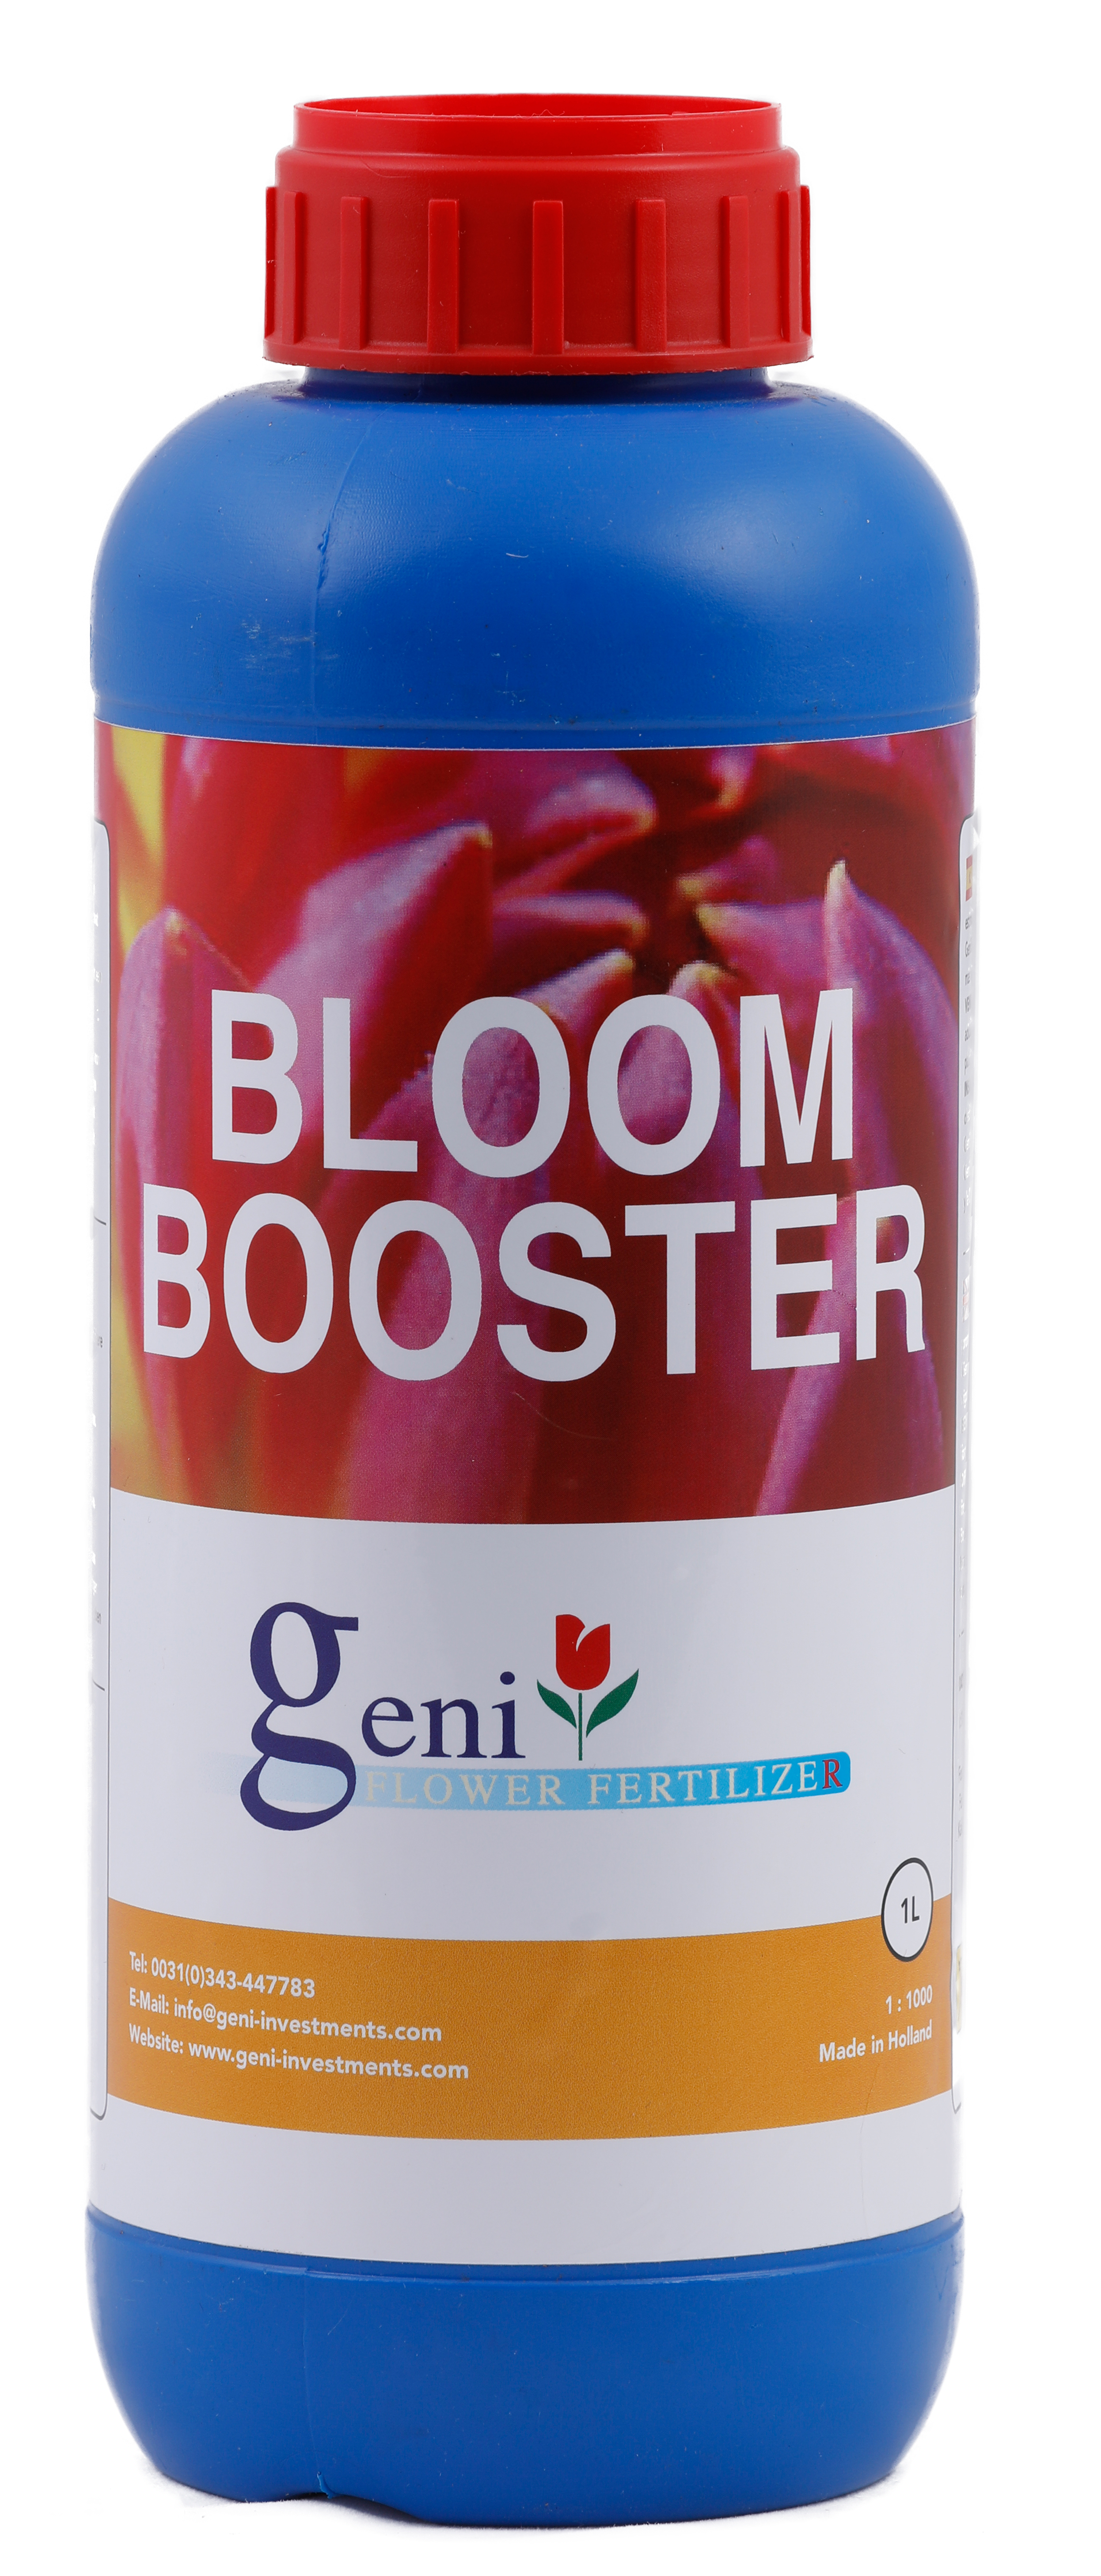 Bloom Bosster